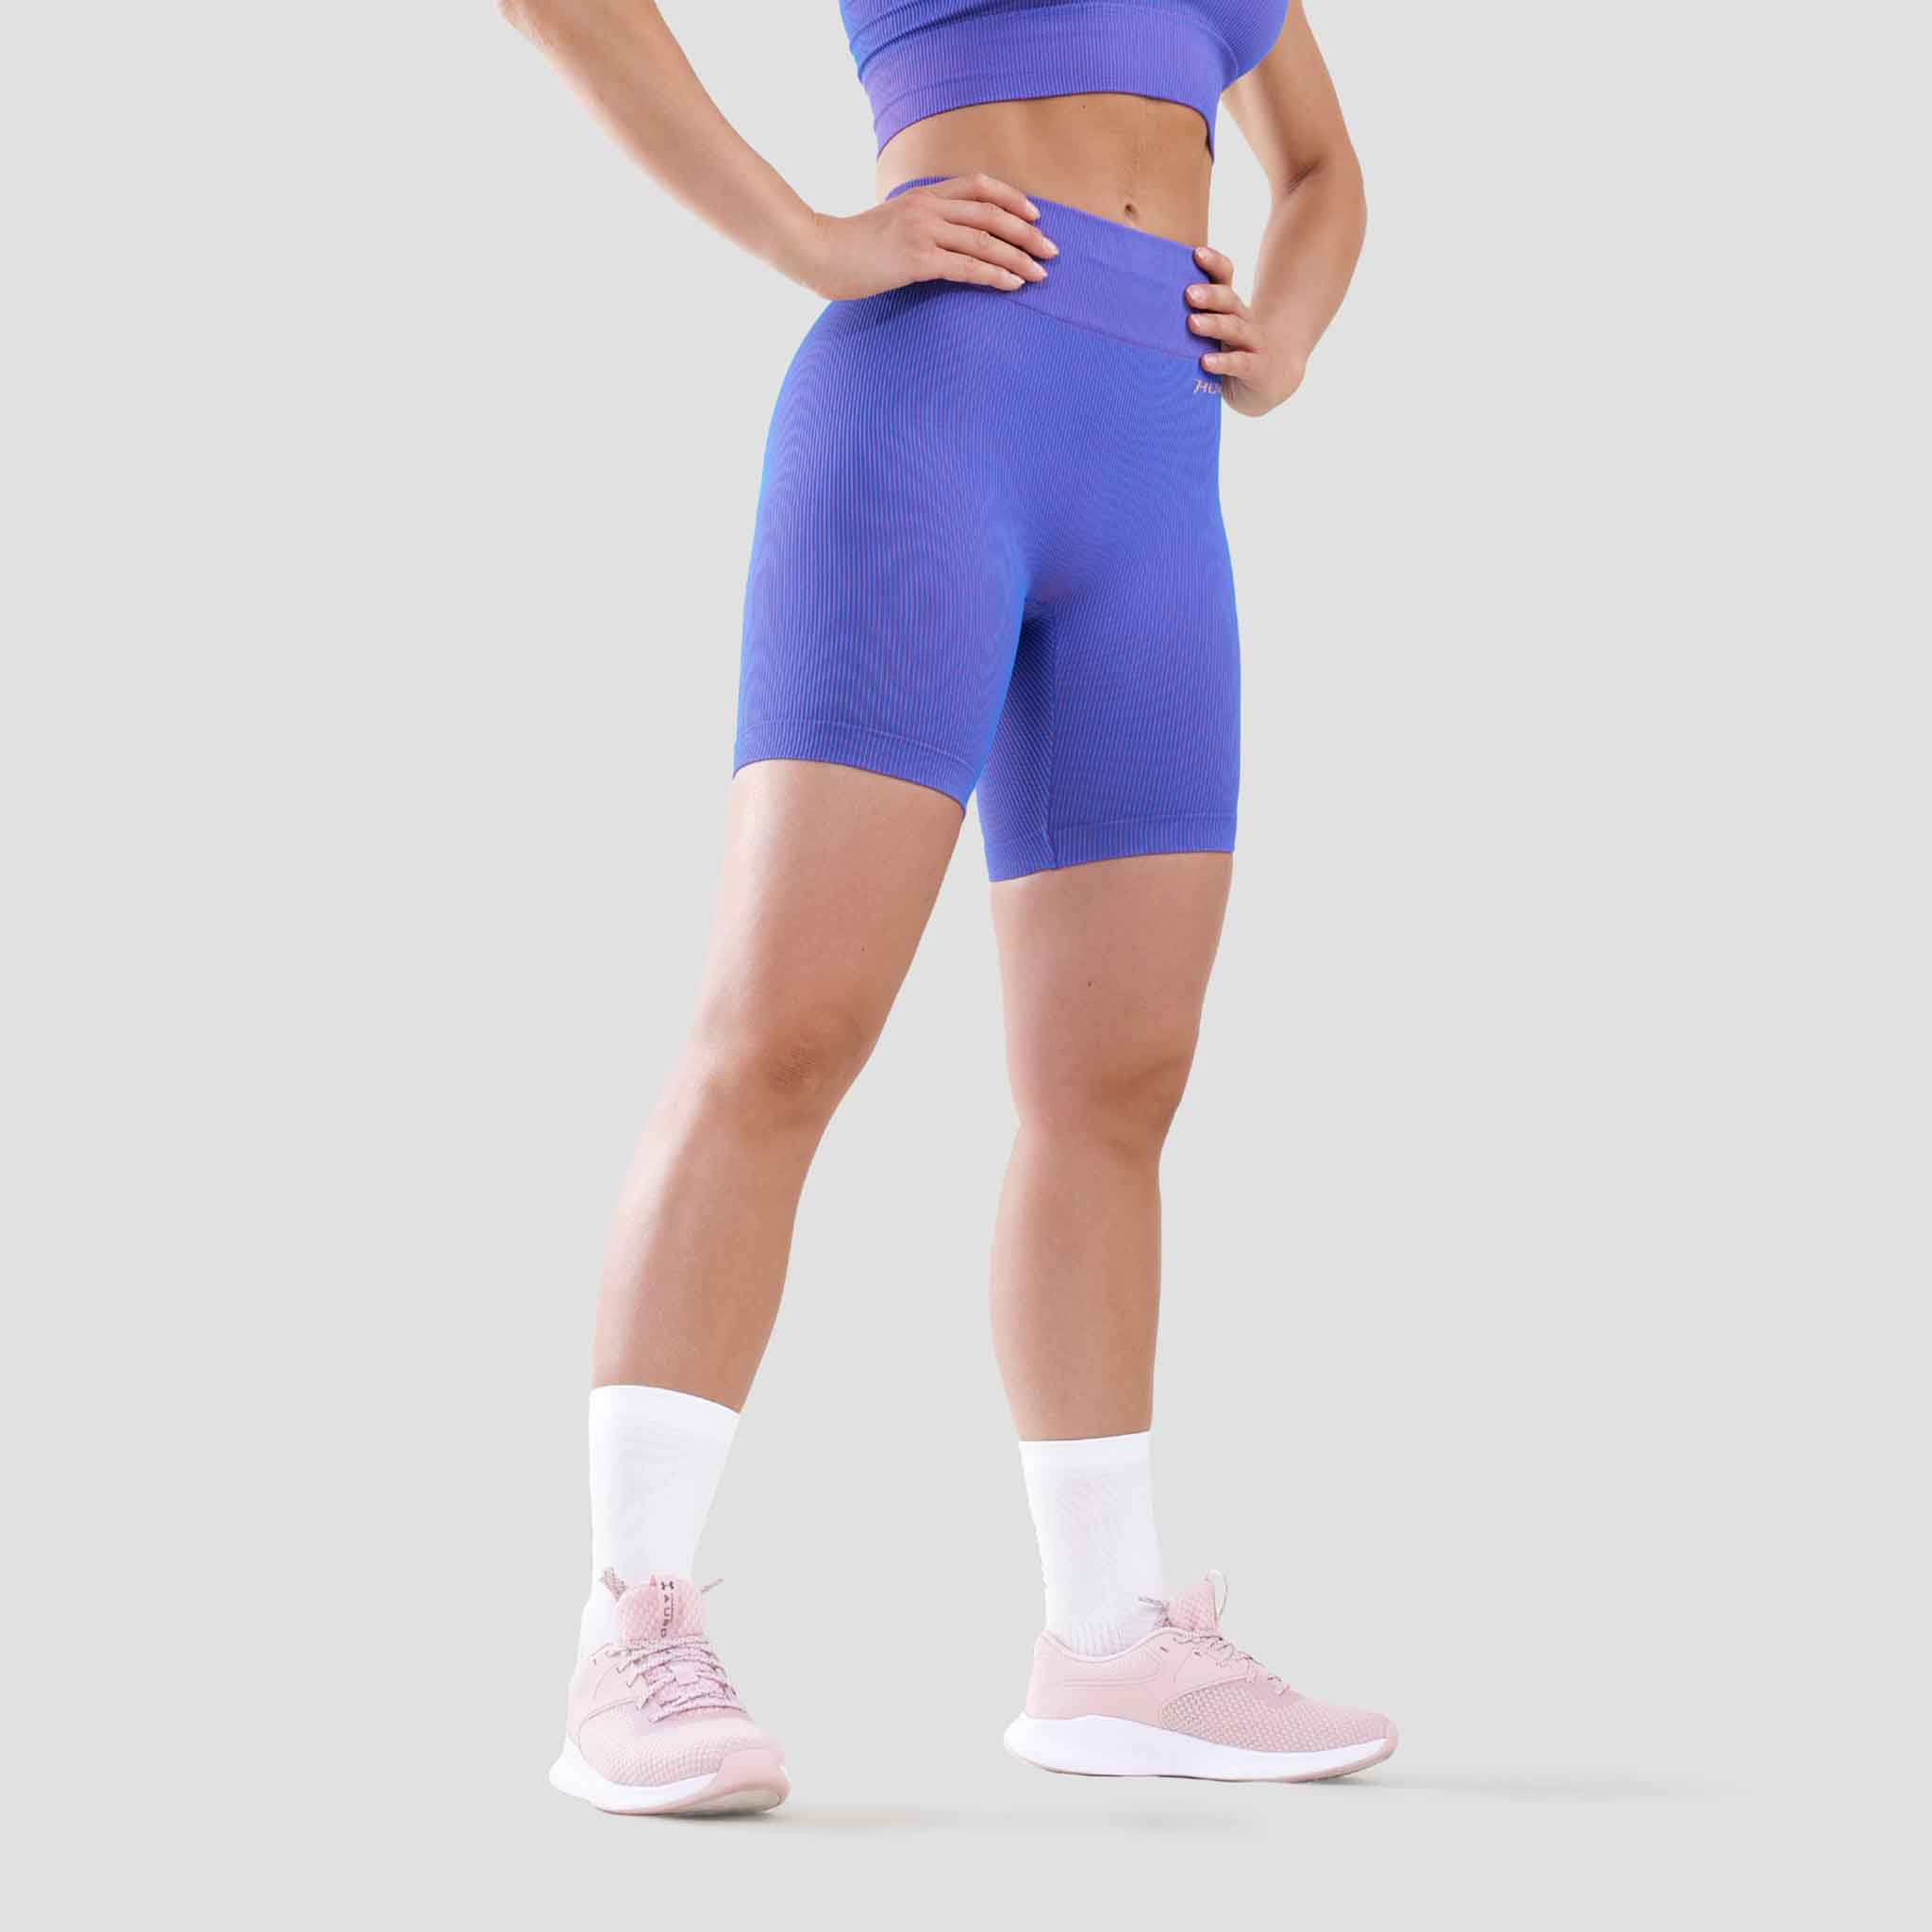 HOKO - Malla Corta HEIWA para Mujer - Malla Corta de Compresión - Malla  Ideal Running, Fitness y Gimnasio - Malla sin Costuras - Máxima Sujeción y  Comodidad